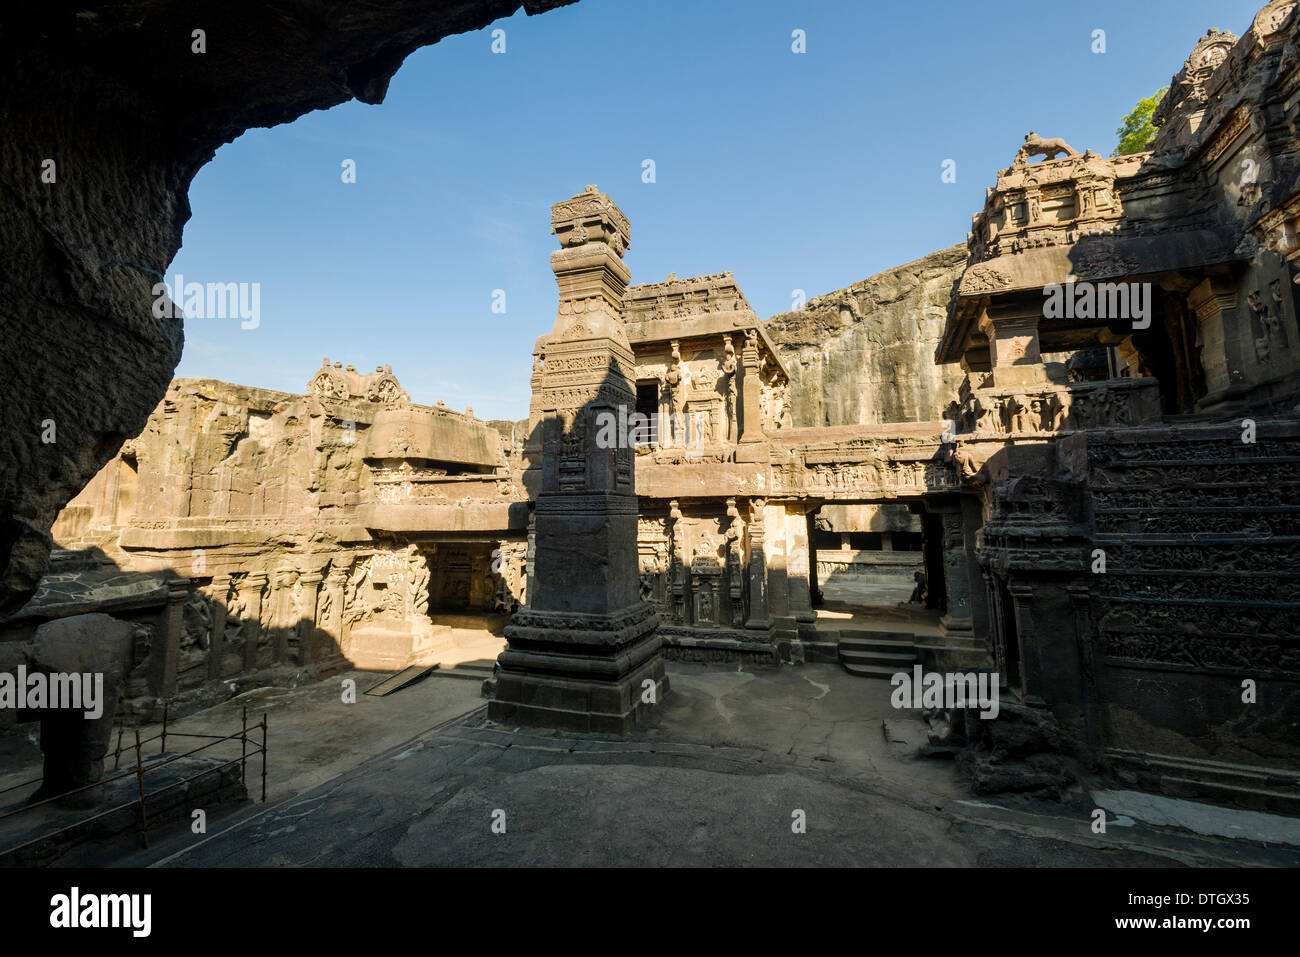 Cave 16, le Kailashanatha grotte, les grottes d'Ellora, UNESCO World Heritage Site, Ellora, Maharashtra, Inde Banque D'Images